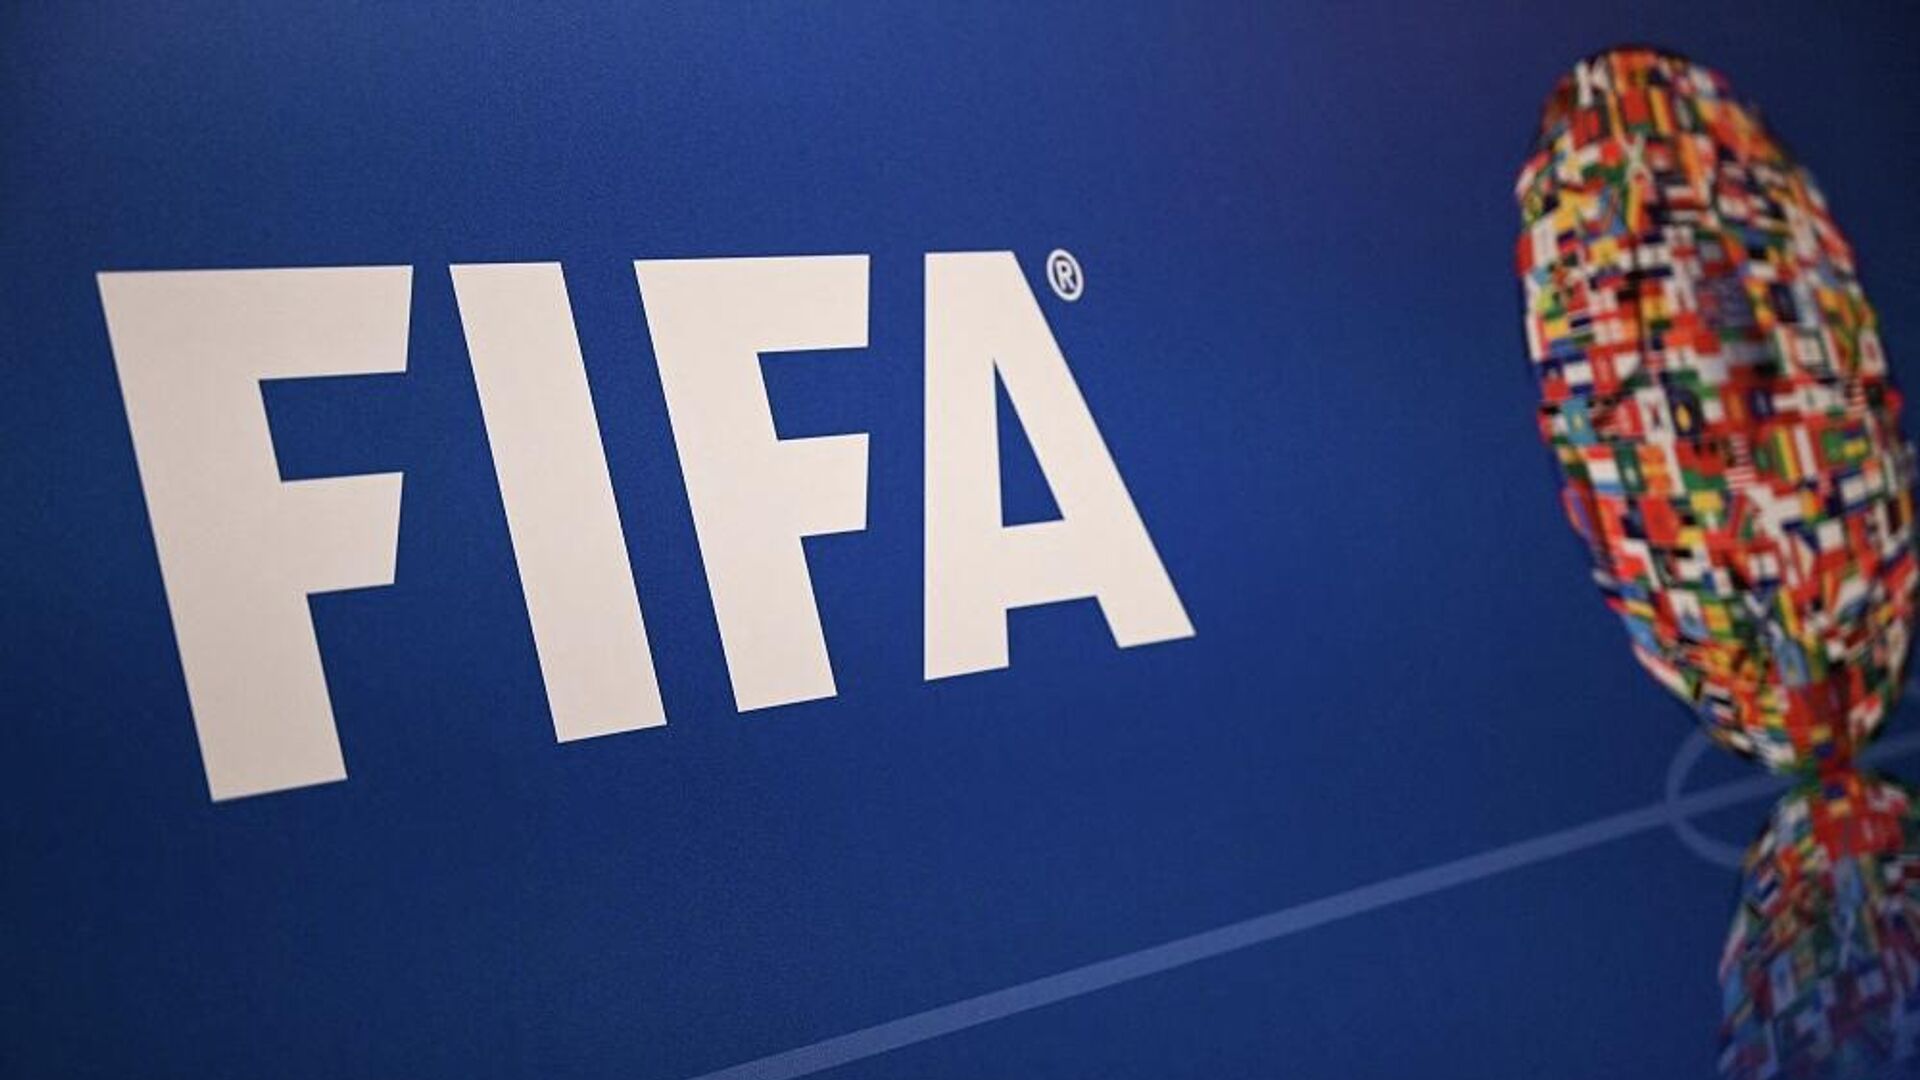 فيفا يكشف تفاصيل ومواعيد مراحل التأهل القاري لكأس العالم 2026